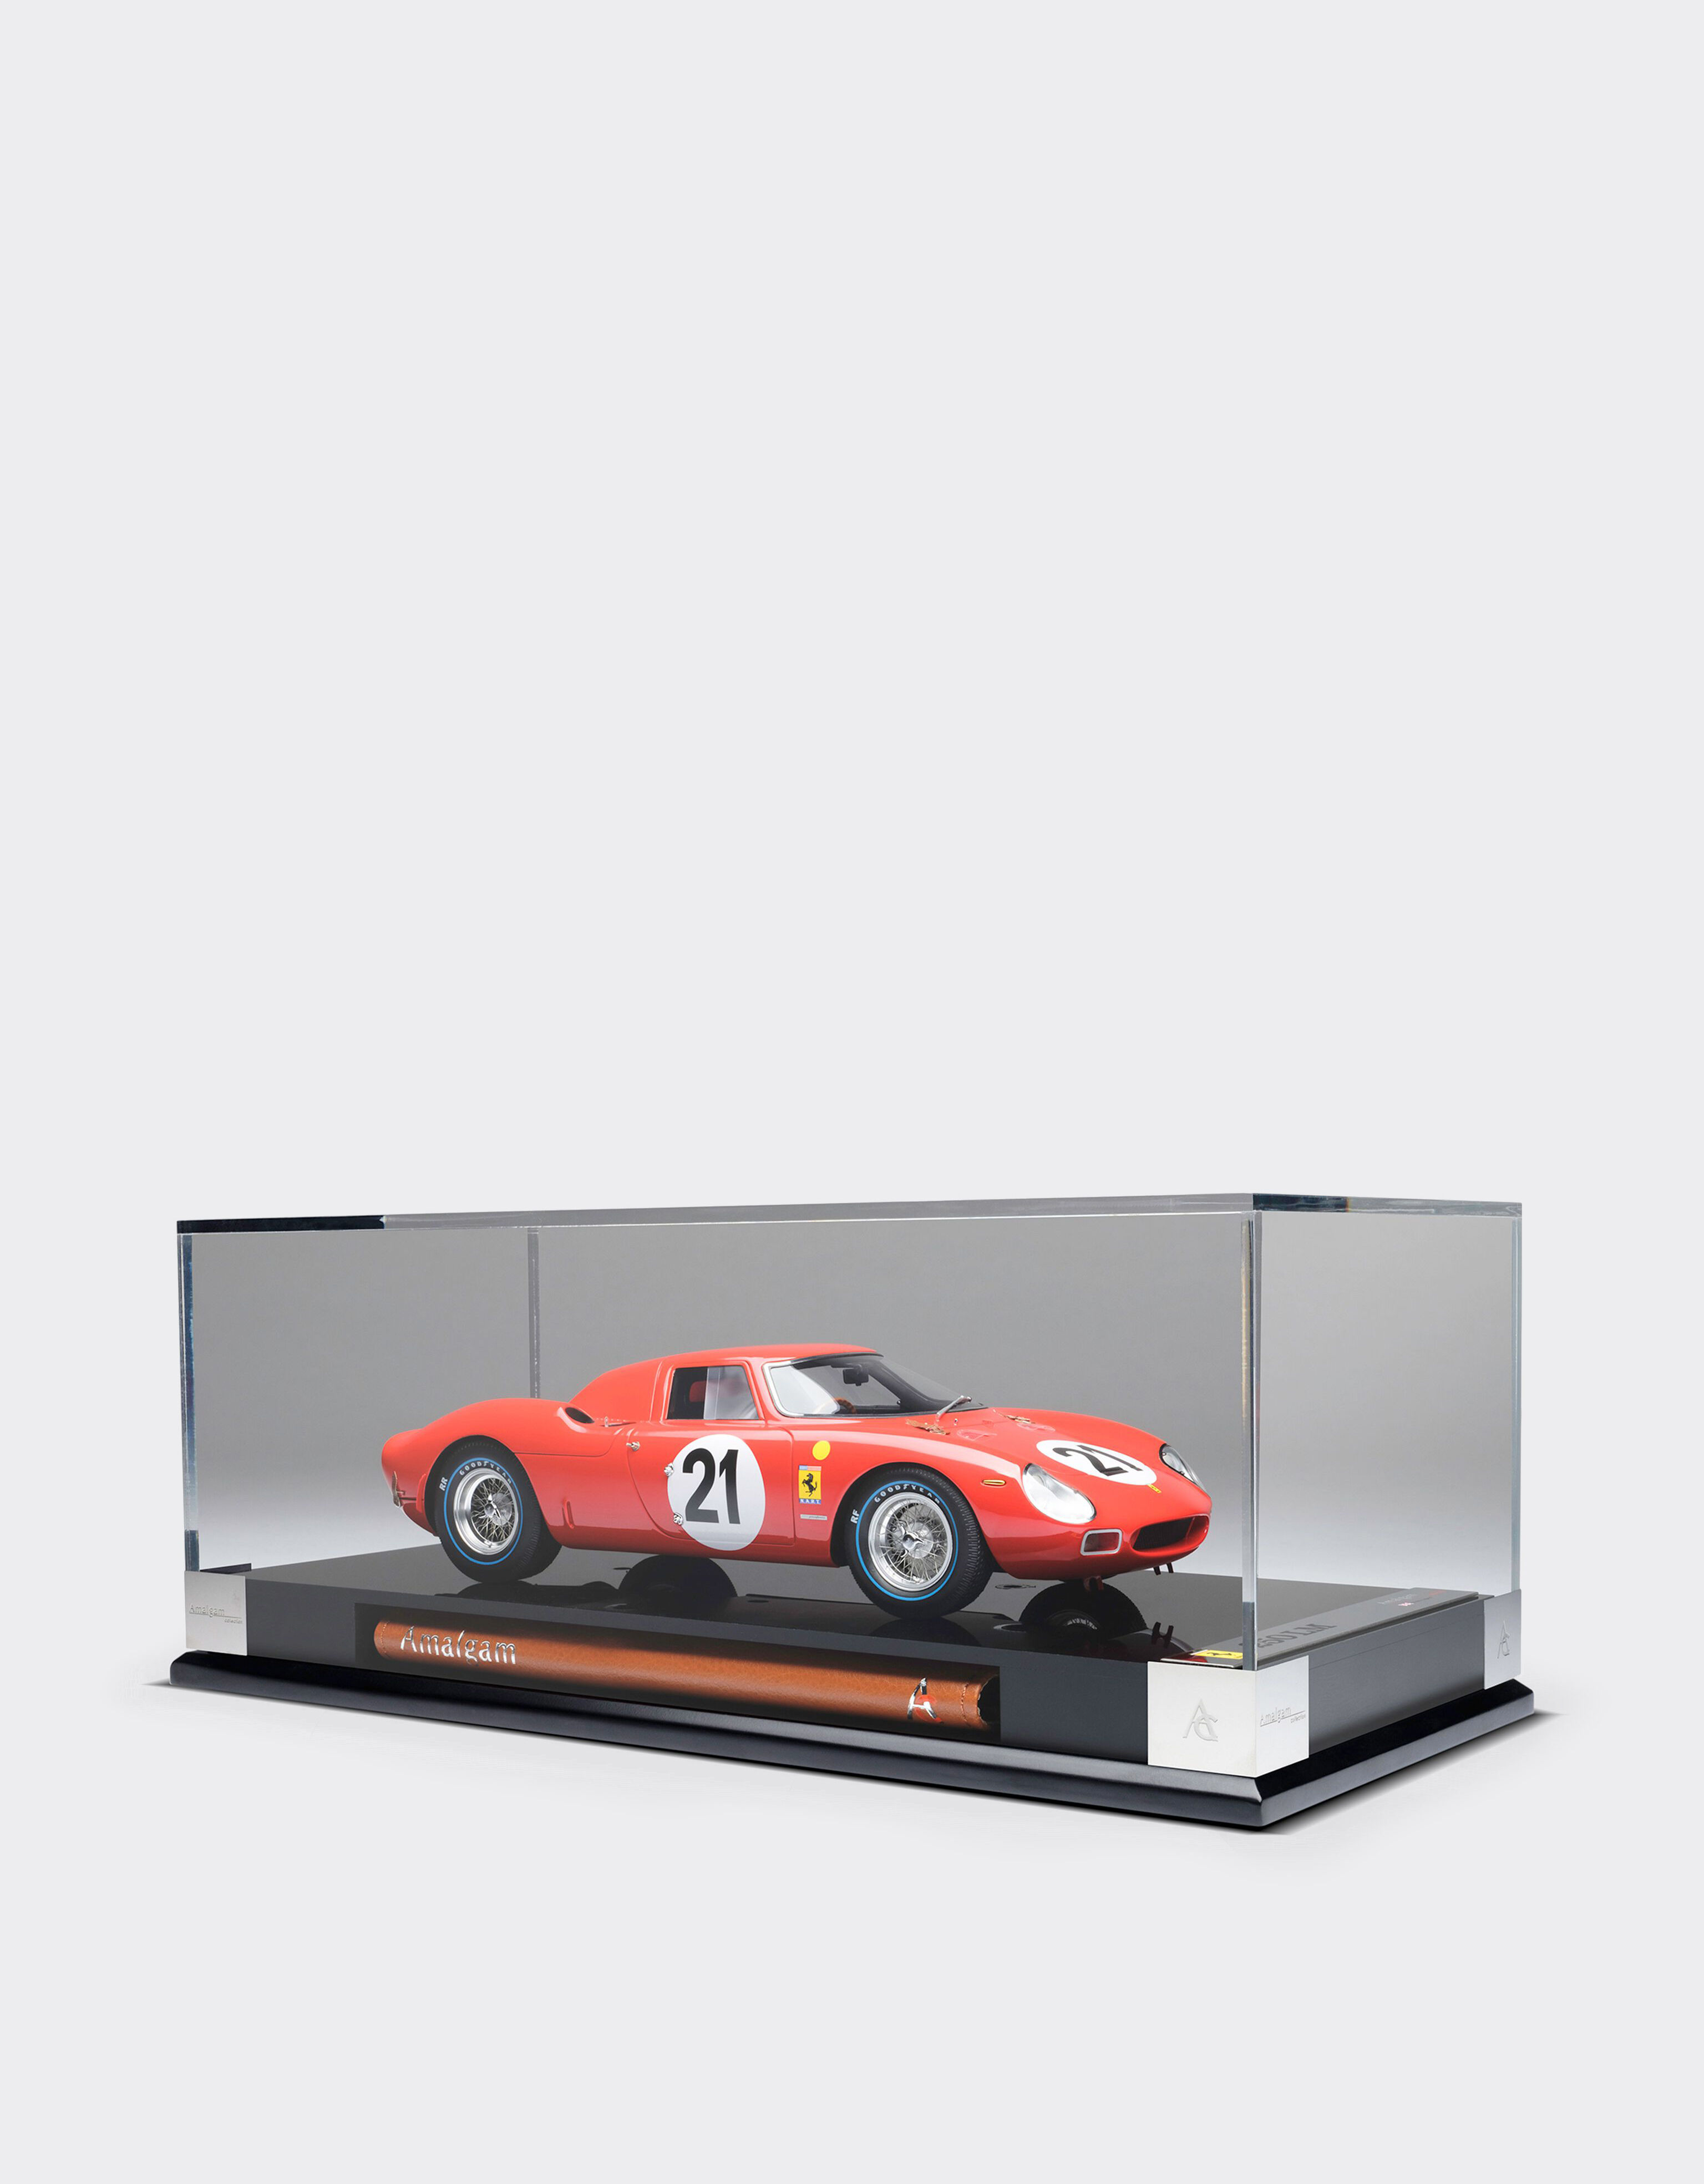 Ferrari Ferrari 250 LM 1965 Le Mans model in 1:18 scale MULTICOLOUR L7976f